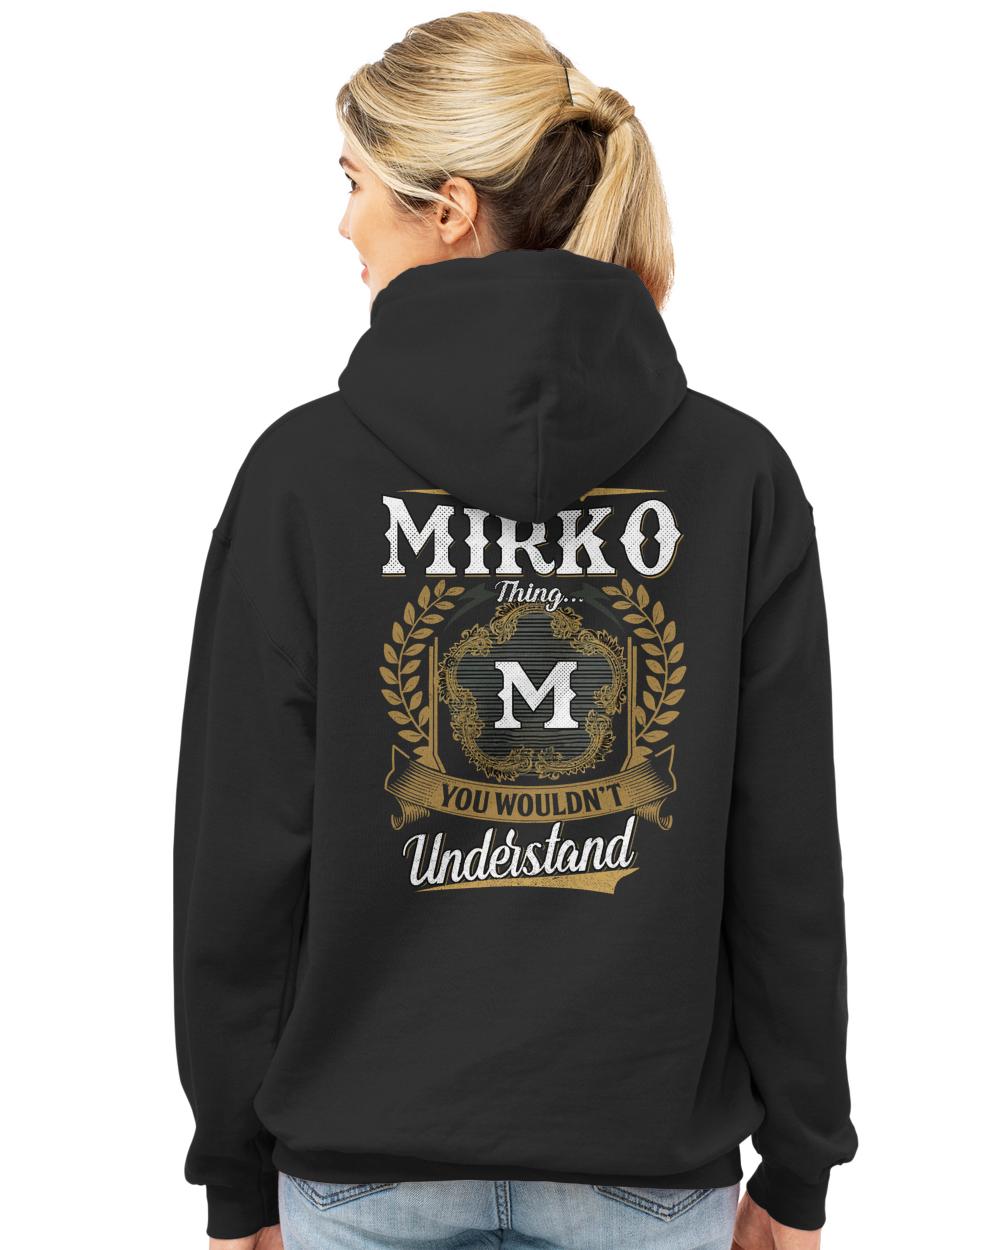 MIRKO-13K-1-01